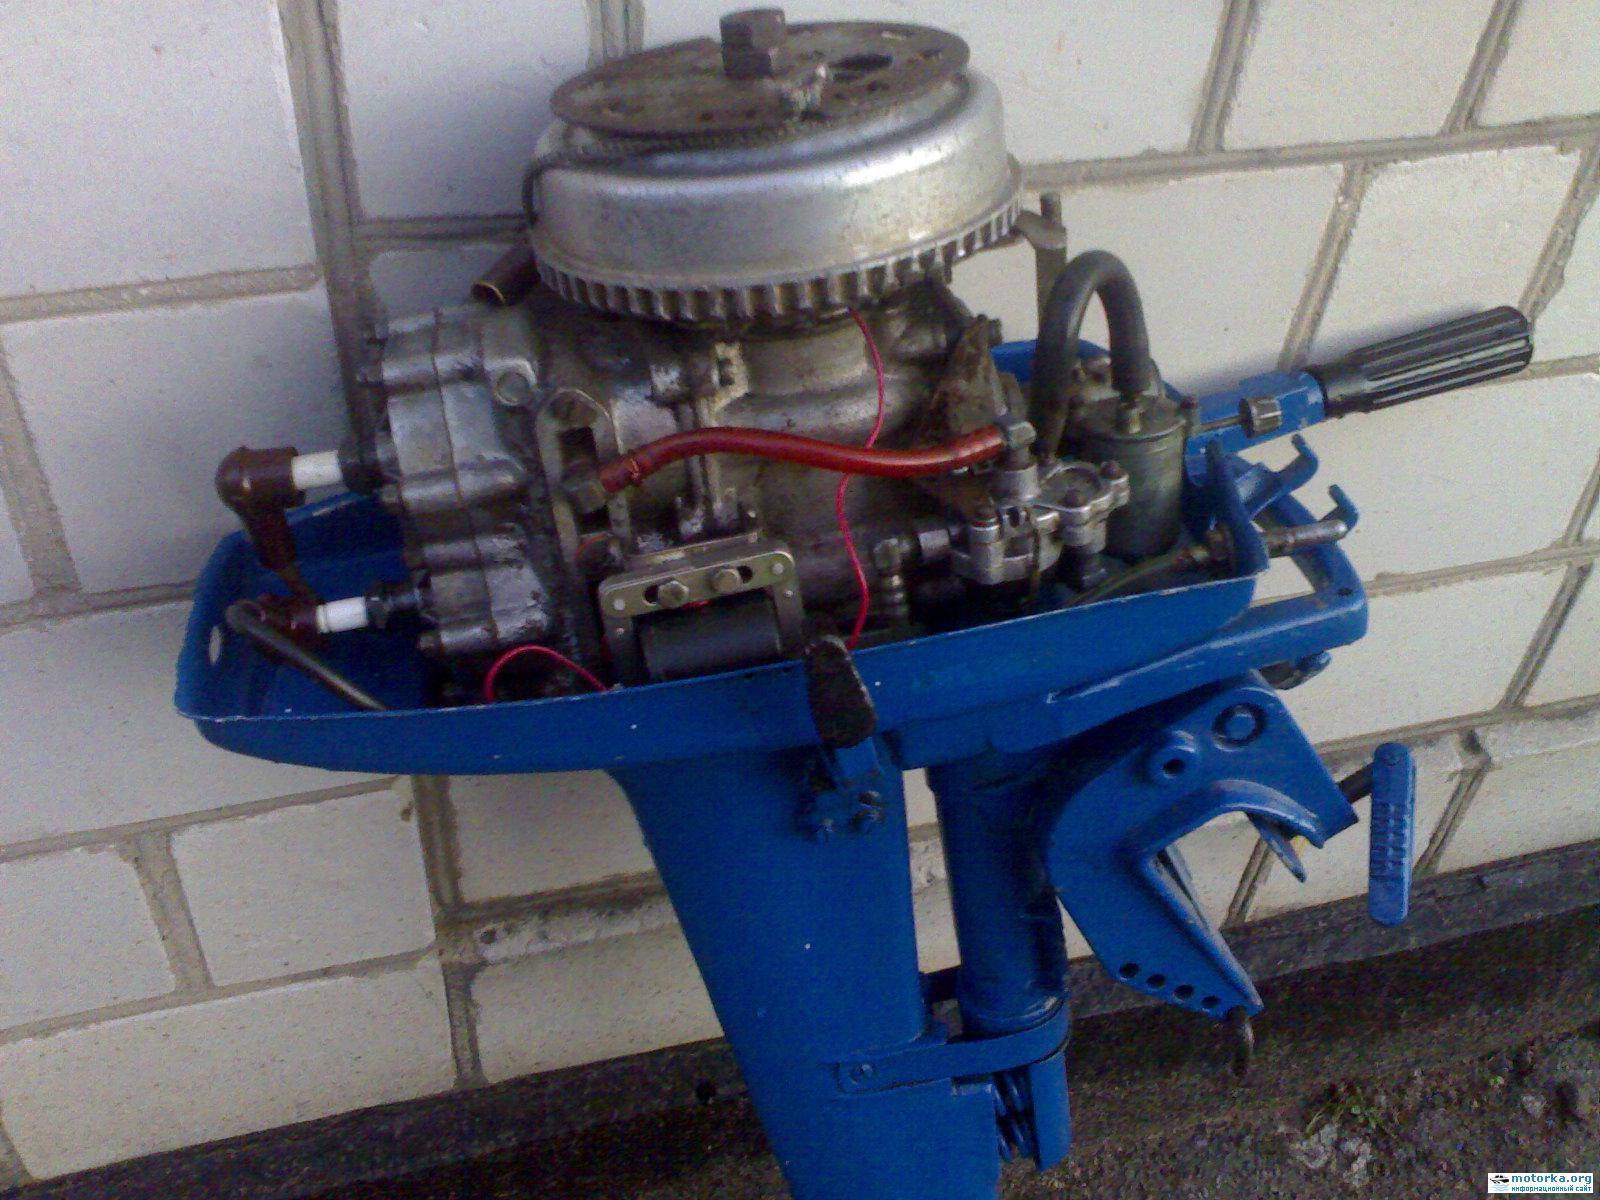 Лодочный мотор ветерок 8, 8м, 12: технические характеристики, отзывы